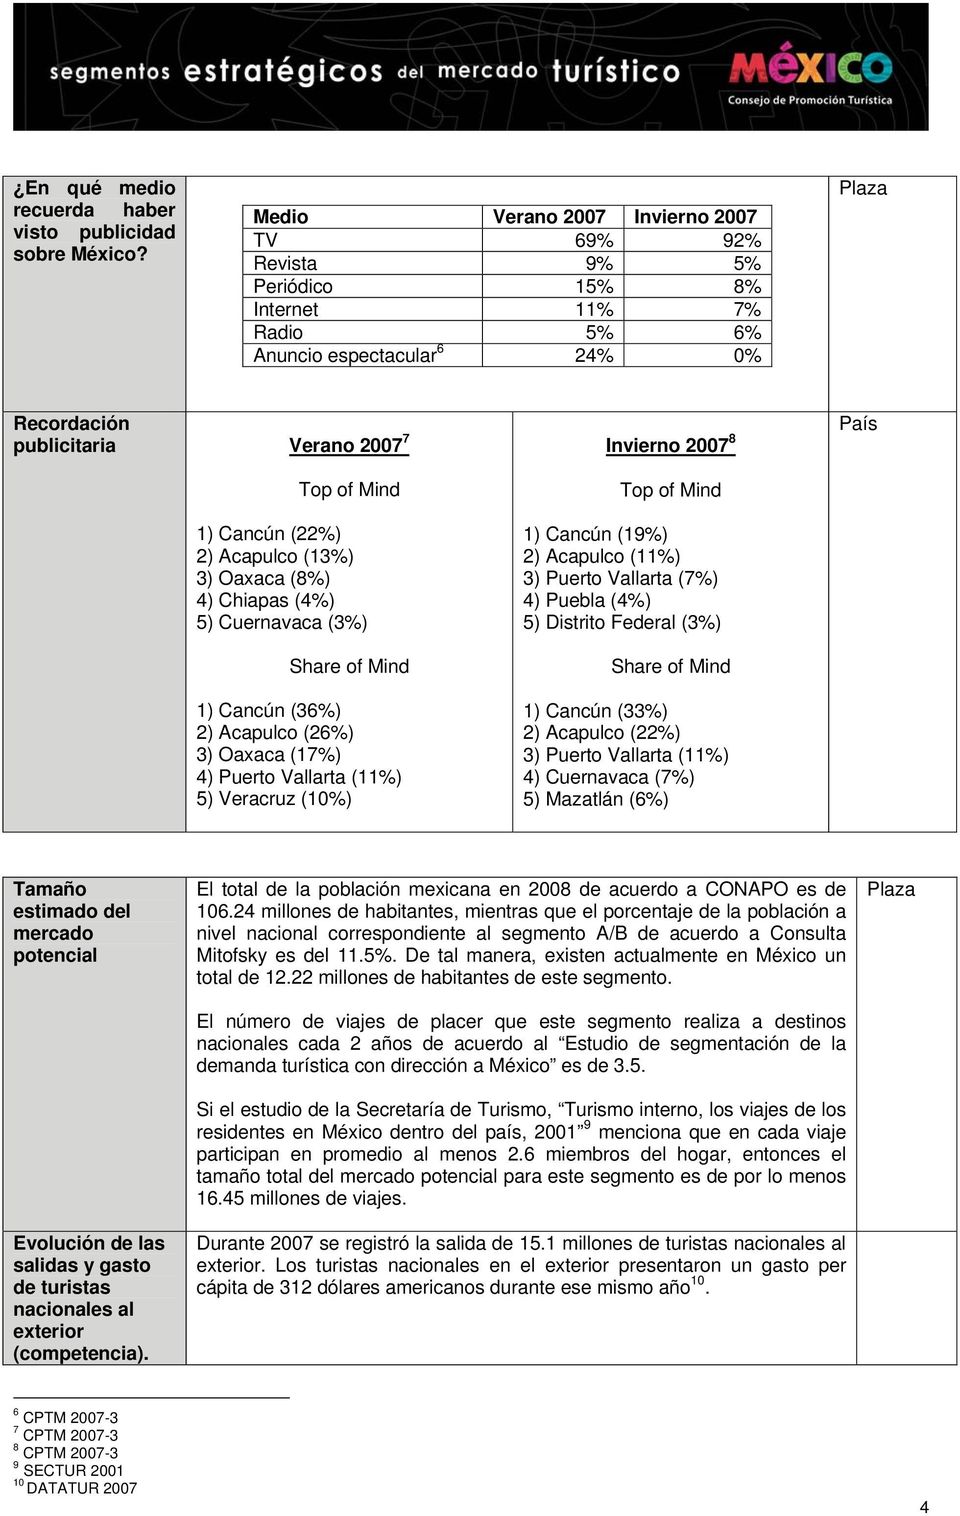 (22%) 2) Acapulco (13%) 3) Oaxaca (8%) 4) Chiapas (4%) 5) Cuernavaca (3%) Share of Mind 1) Cancún (36%) 2) Acapulco (26%) 3) Oaxaca (17%) 4) Puerto Vallarta (11%) 5) Veracruz (10%) Invierno 2007 8